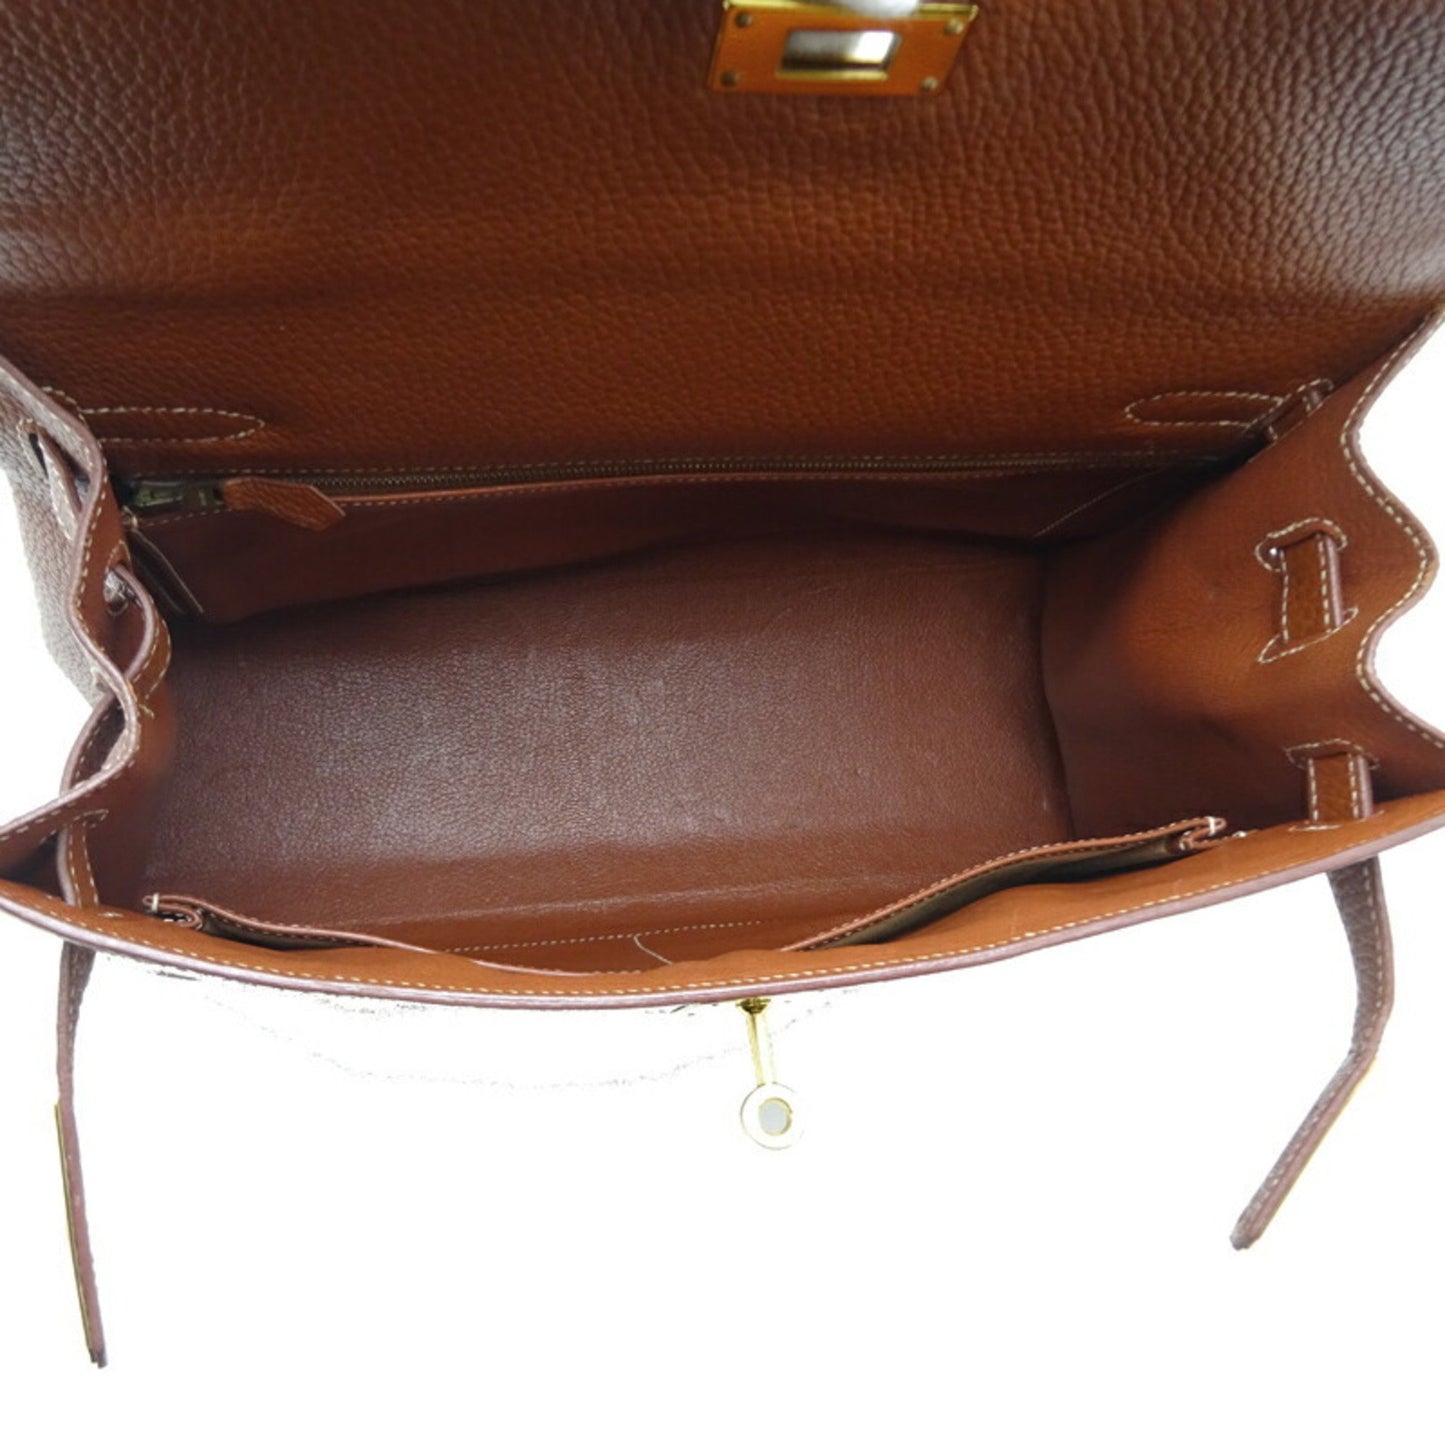 Hermes Kelly 32 Handbag Brown